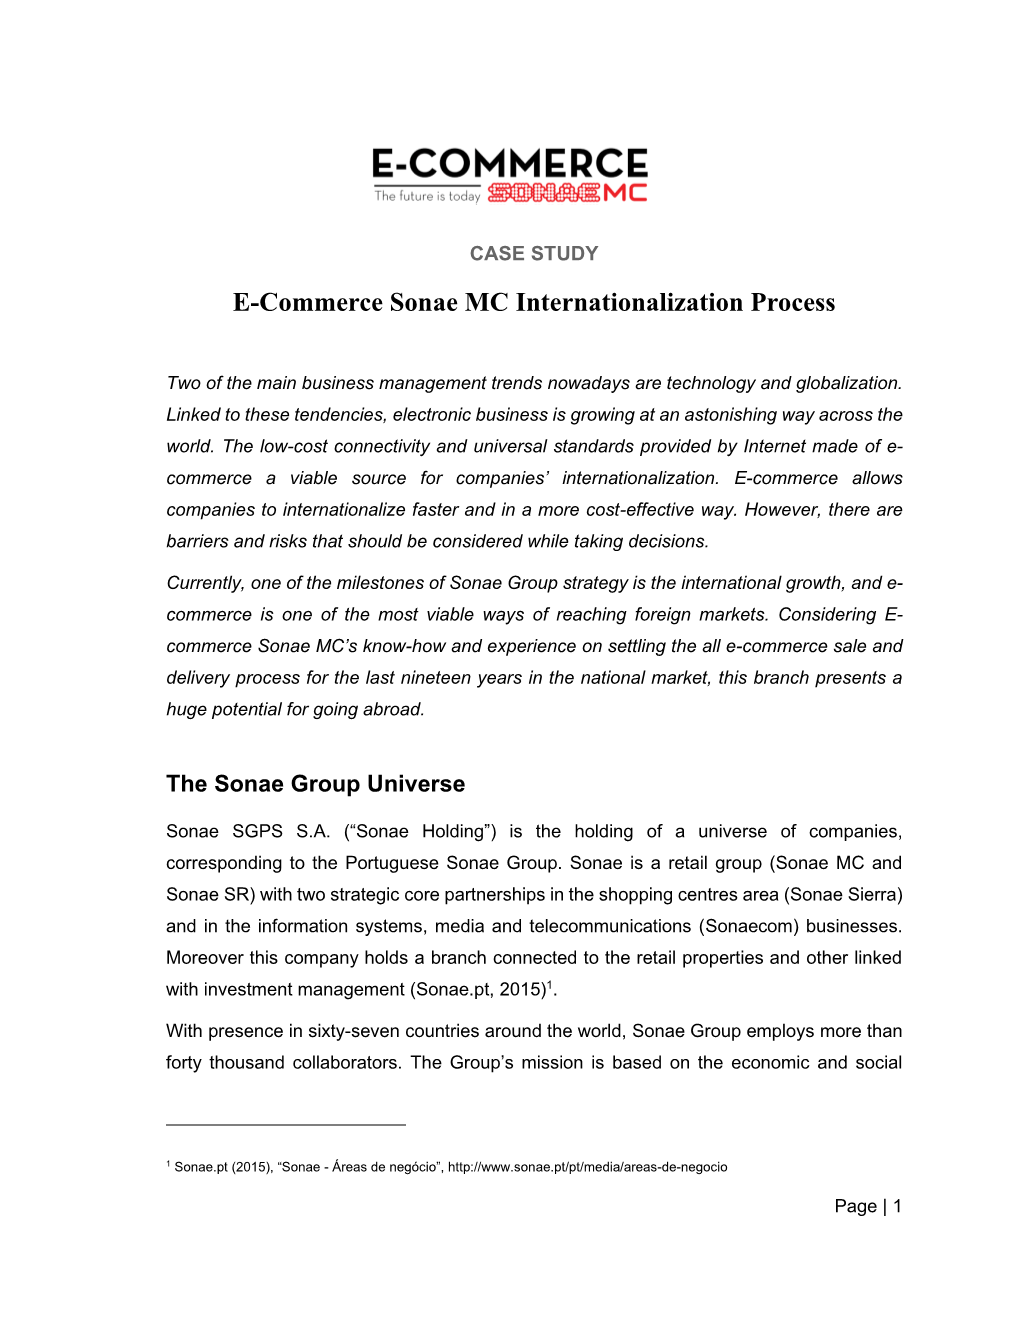 E-Commerce Sonae MC Internationalization Process